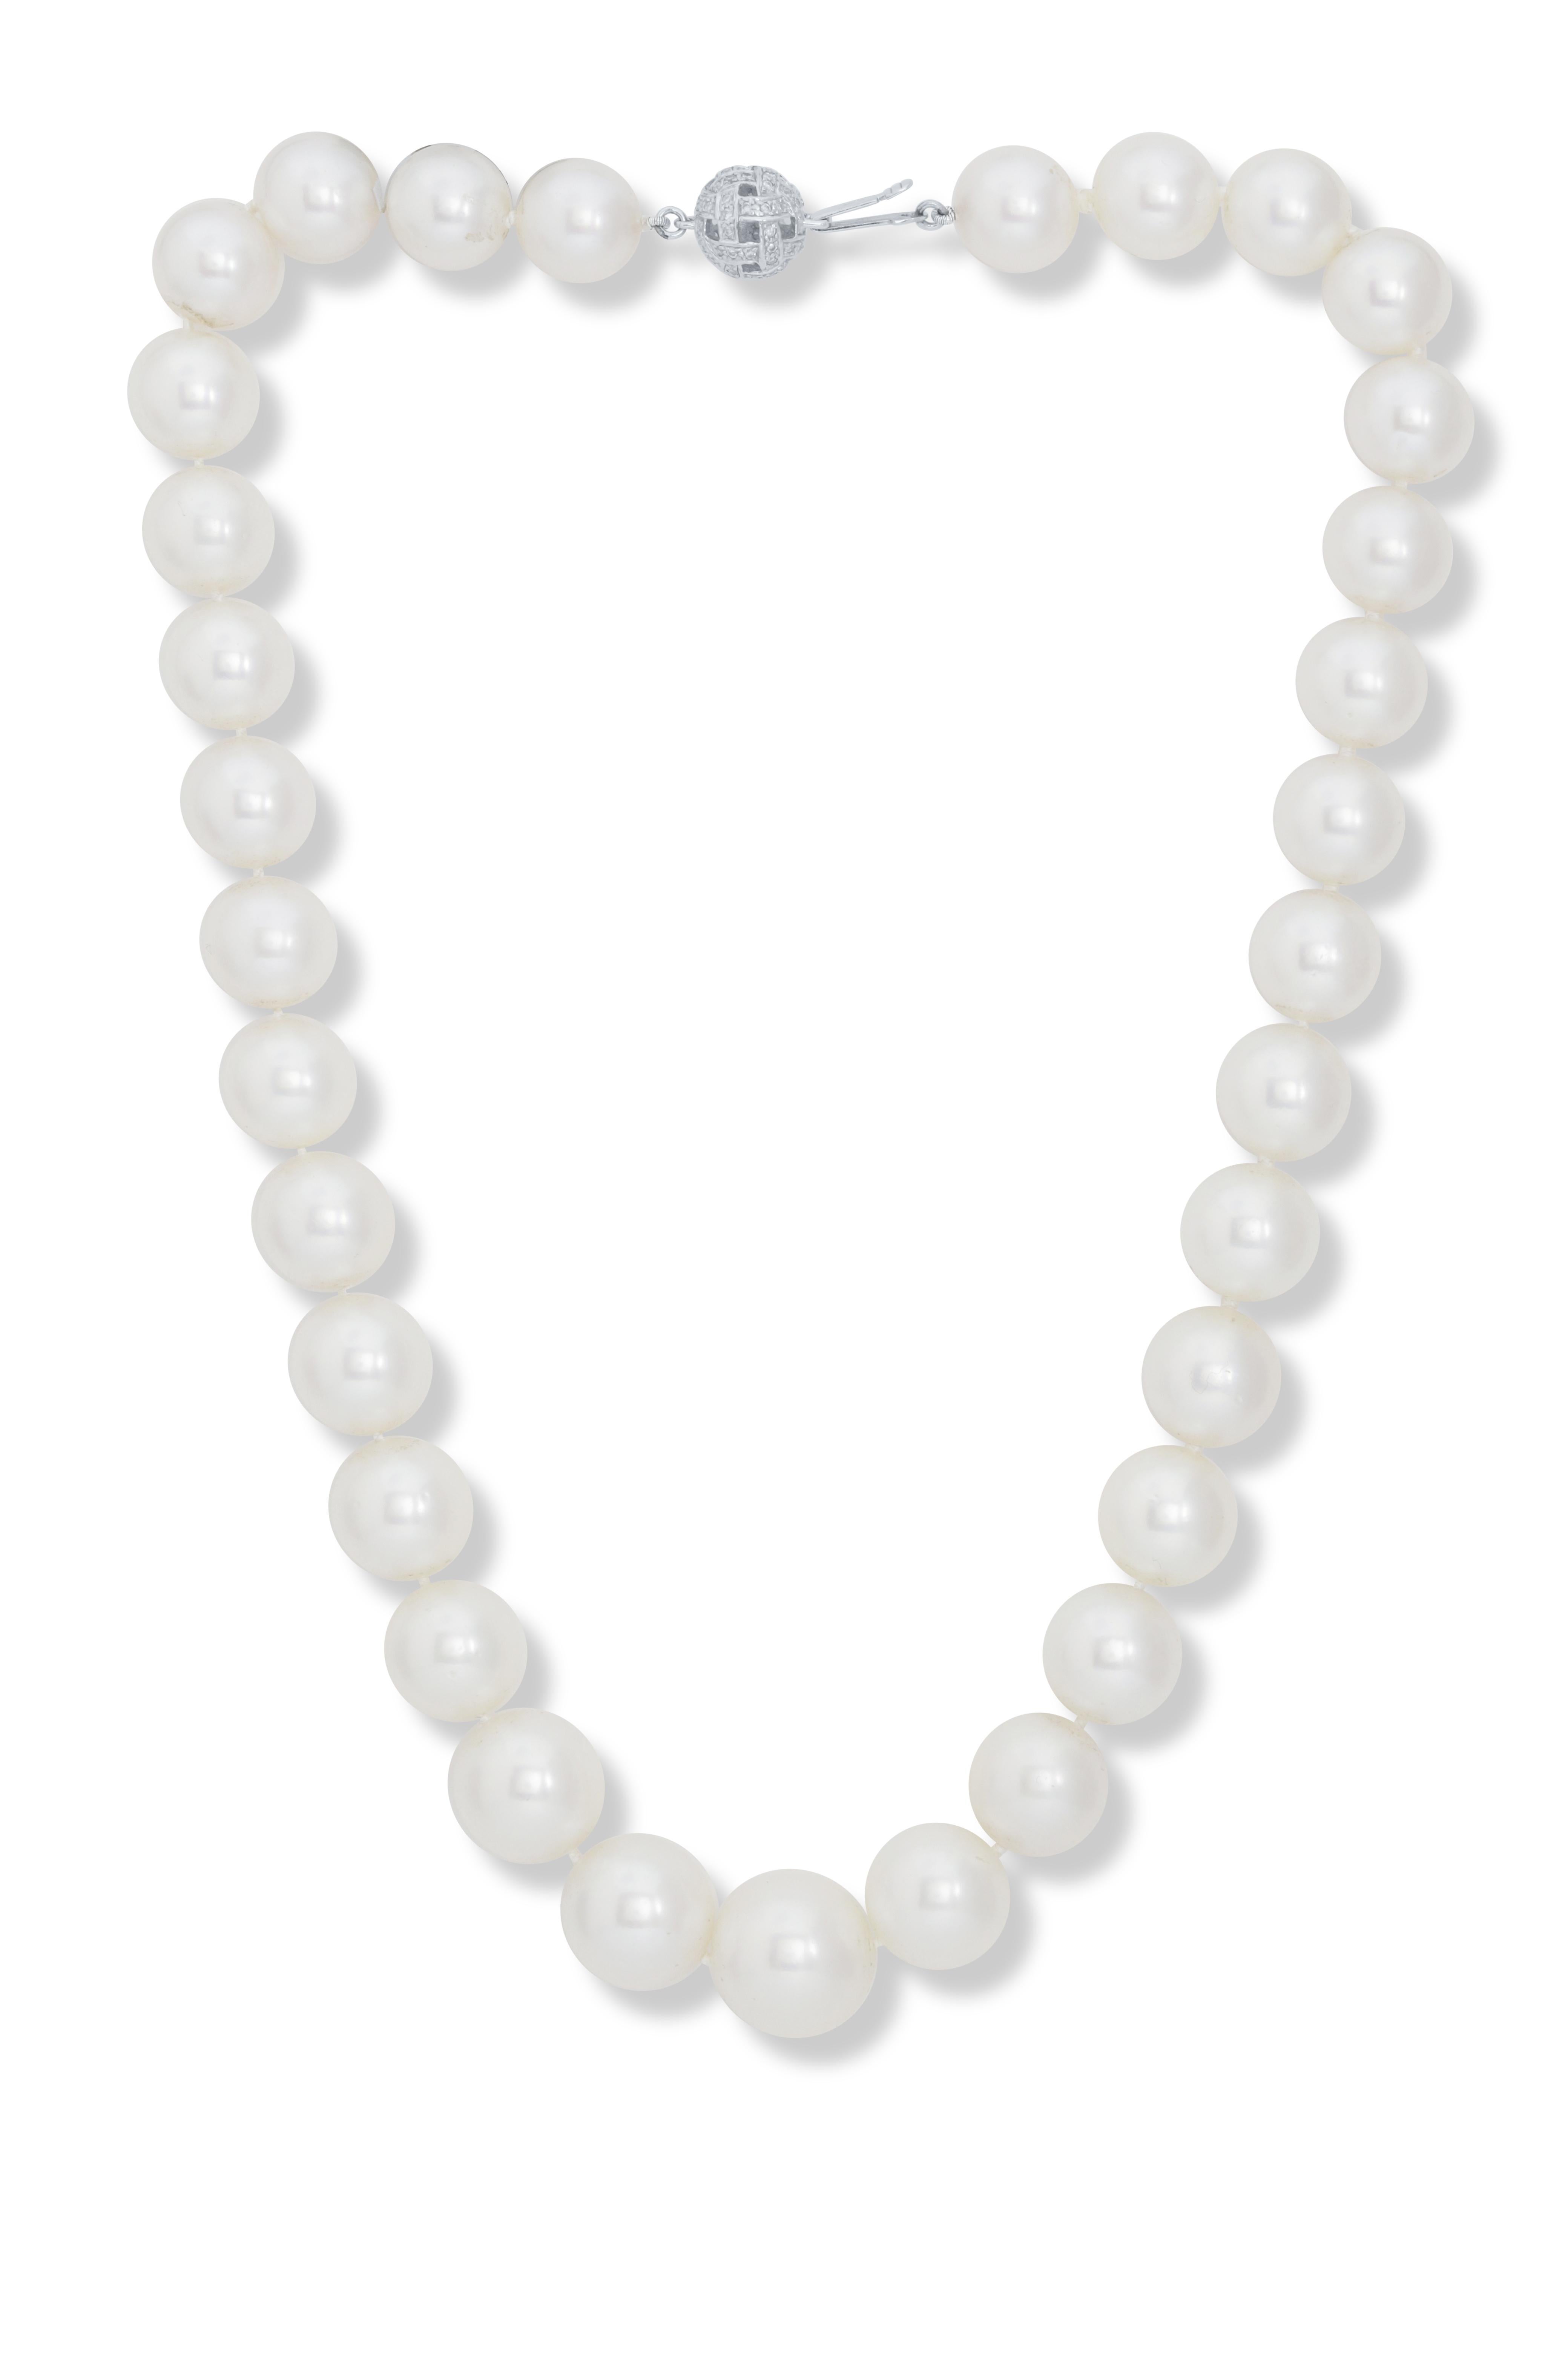 18kt weißgold perlenkette mit 11-15 mm tahitianischen südseeperlen fein rosa/weiß verziert  und einem Clip mit runden Mikropave-Diamanten von 0,40 Karat (tw)
Diana M. ist seit über 35 Jahren ein führender Anbieter von hochwertigem Schmuck.
Diana M